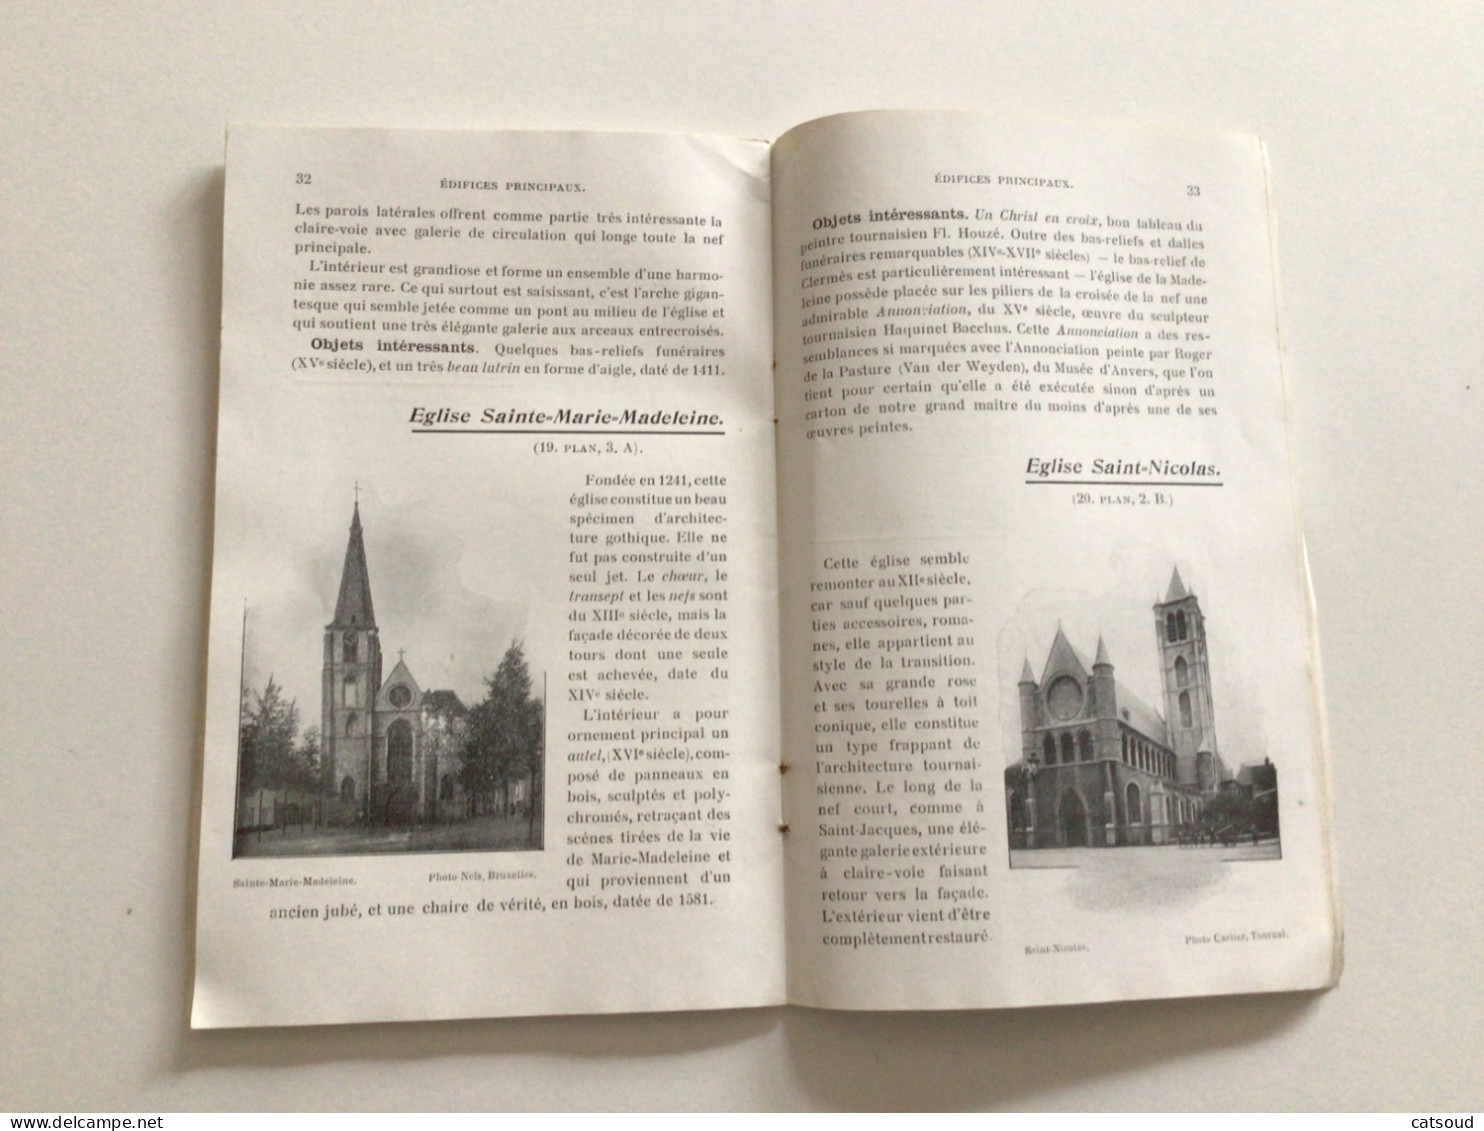 Ancien Livret (1910) Tournai Ville D’Art Imprimé Par Les Établissements Casterman S.A. , Imprimeurs De La Ville - Tourism